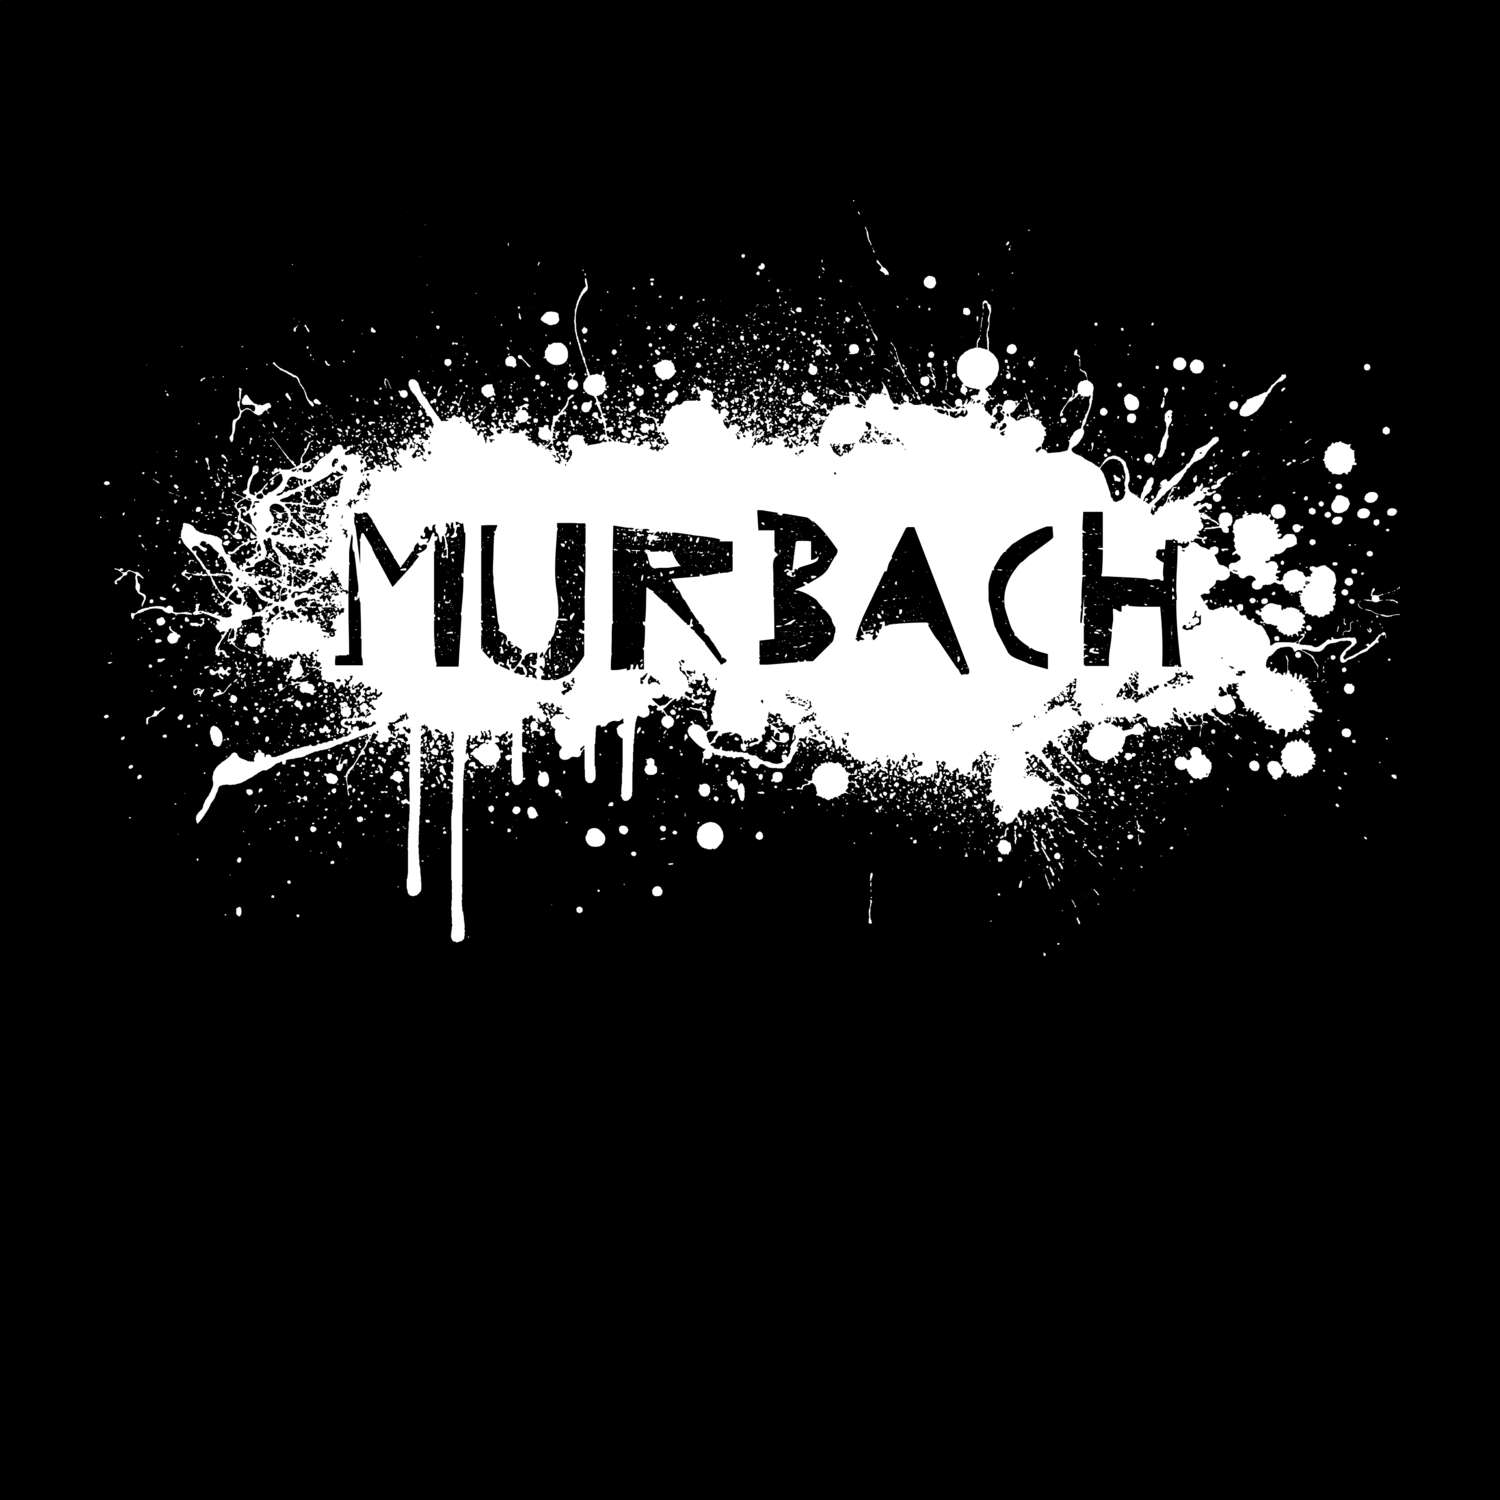 Murbach T-Shirt »Paint Splash Punk«